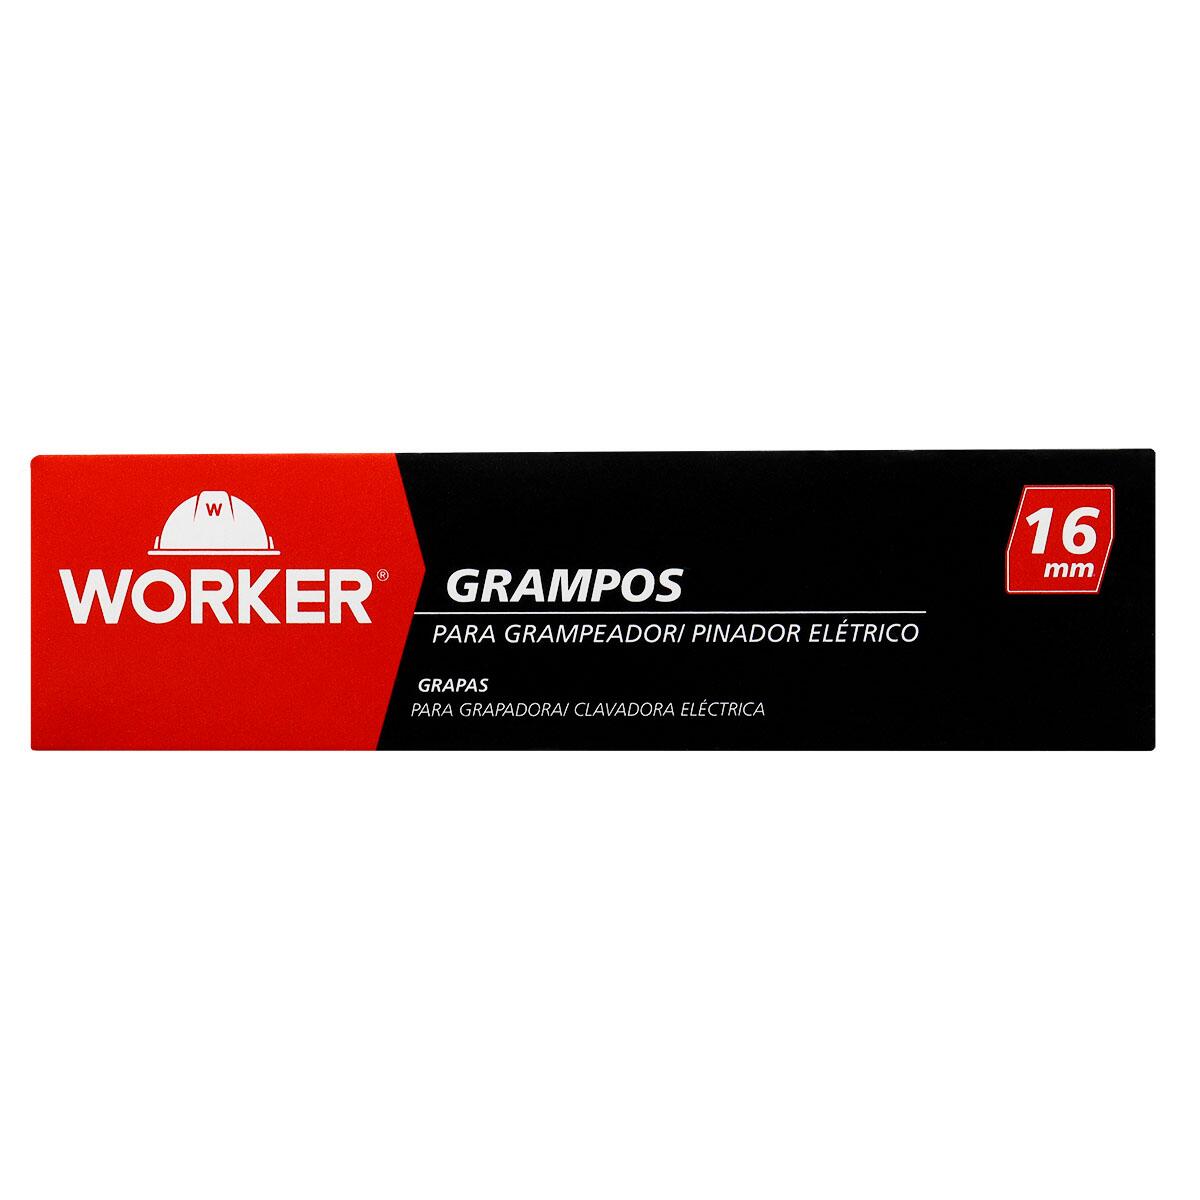 Grampo para Grampeador/ Pinador Elétrico 16Mm 1000 Pçs Worker